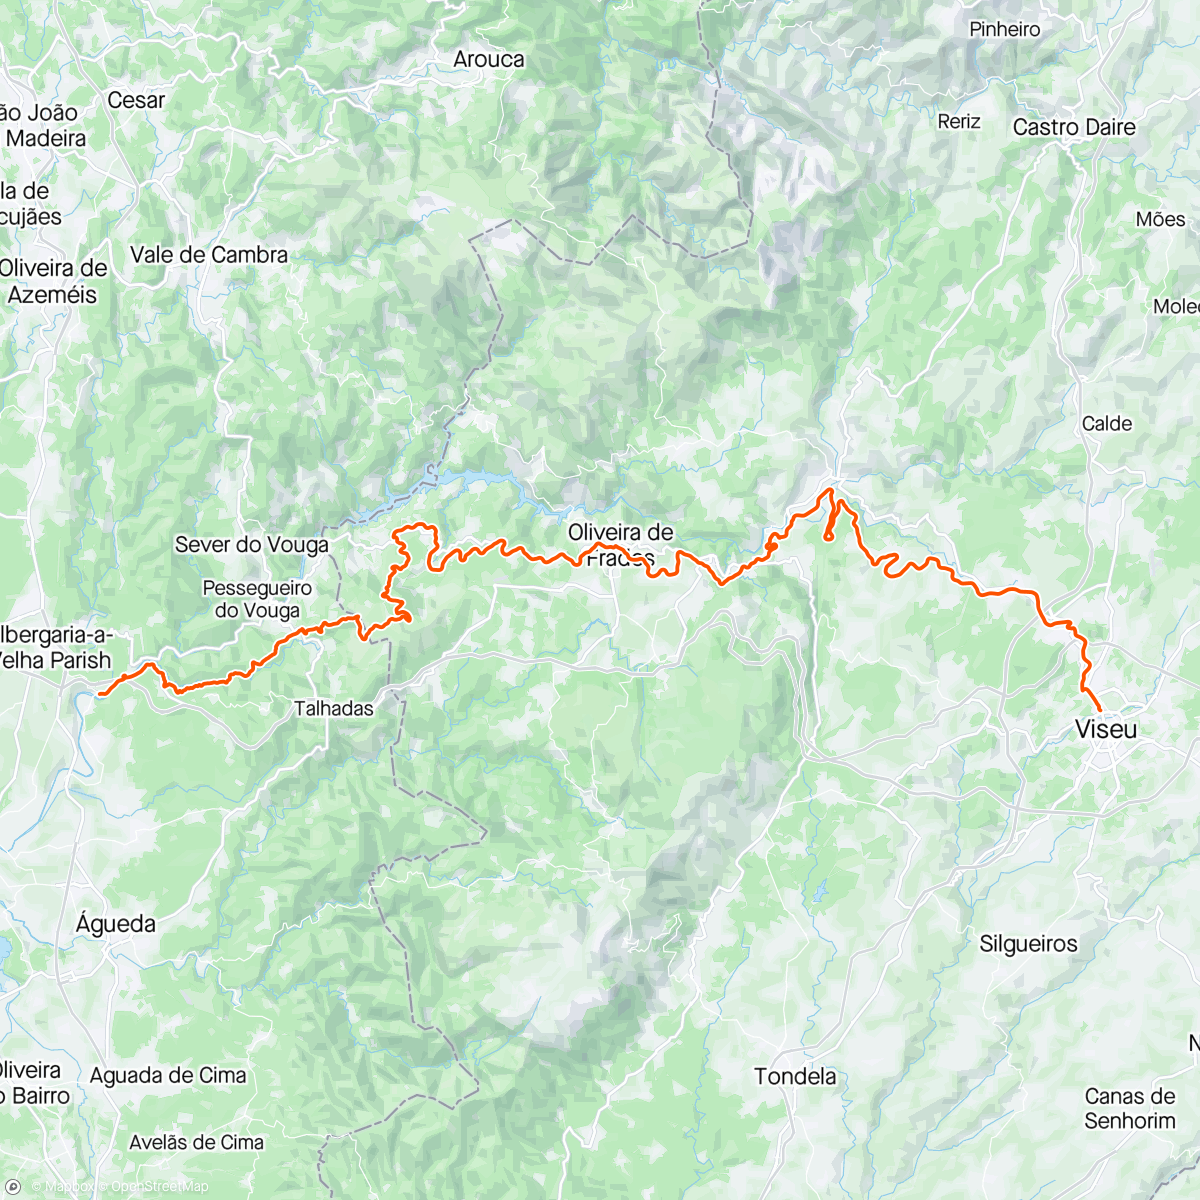 アクティビティ「Volta de bicicleta de montanha matinal」の地図